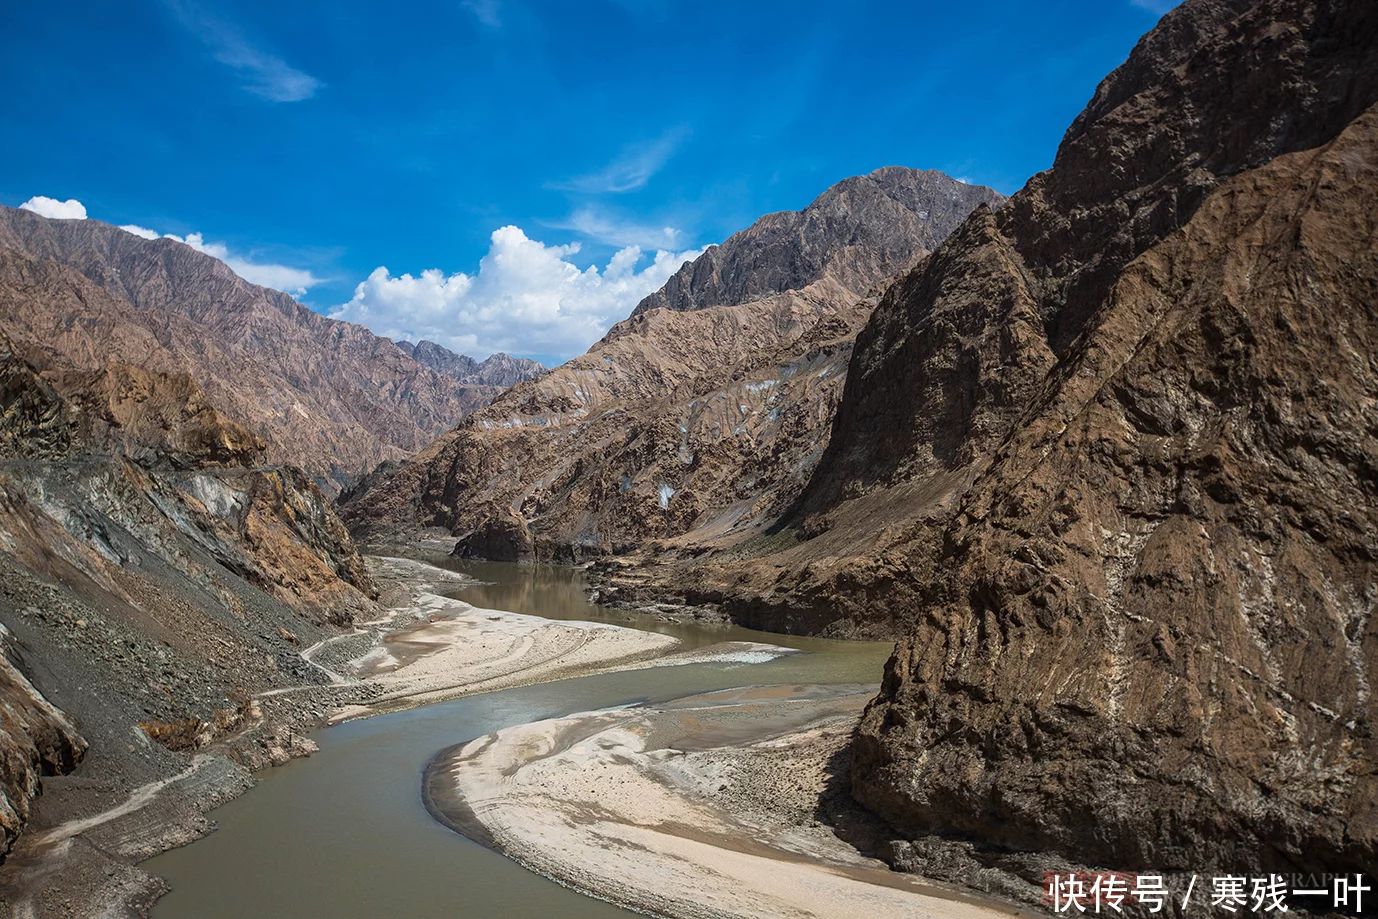 在新疆，人们常说：不到新疆不知中国有多大，不到新疆不知中国有多美。不过今天我要加一句：不到喀什不算到新疆，不走塔莎古道不算自驾越野。是的，此次喀什自驾之旅让我对新疆又有了新的认识，特别是走完塔莎古道，让我感受到了新疆那气吞山河的壮美风景，也让我感受到了人类的渺小与大自然的强大，人类在欣赏自然之美、探索自然、利用自然，更要对大自然有敬畏之心。塔莎古道，一条令人胆战心惊的古道。 